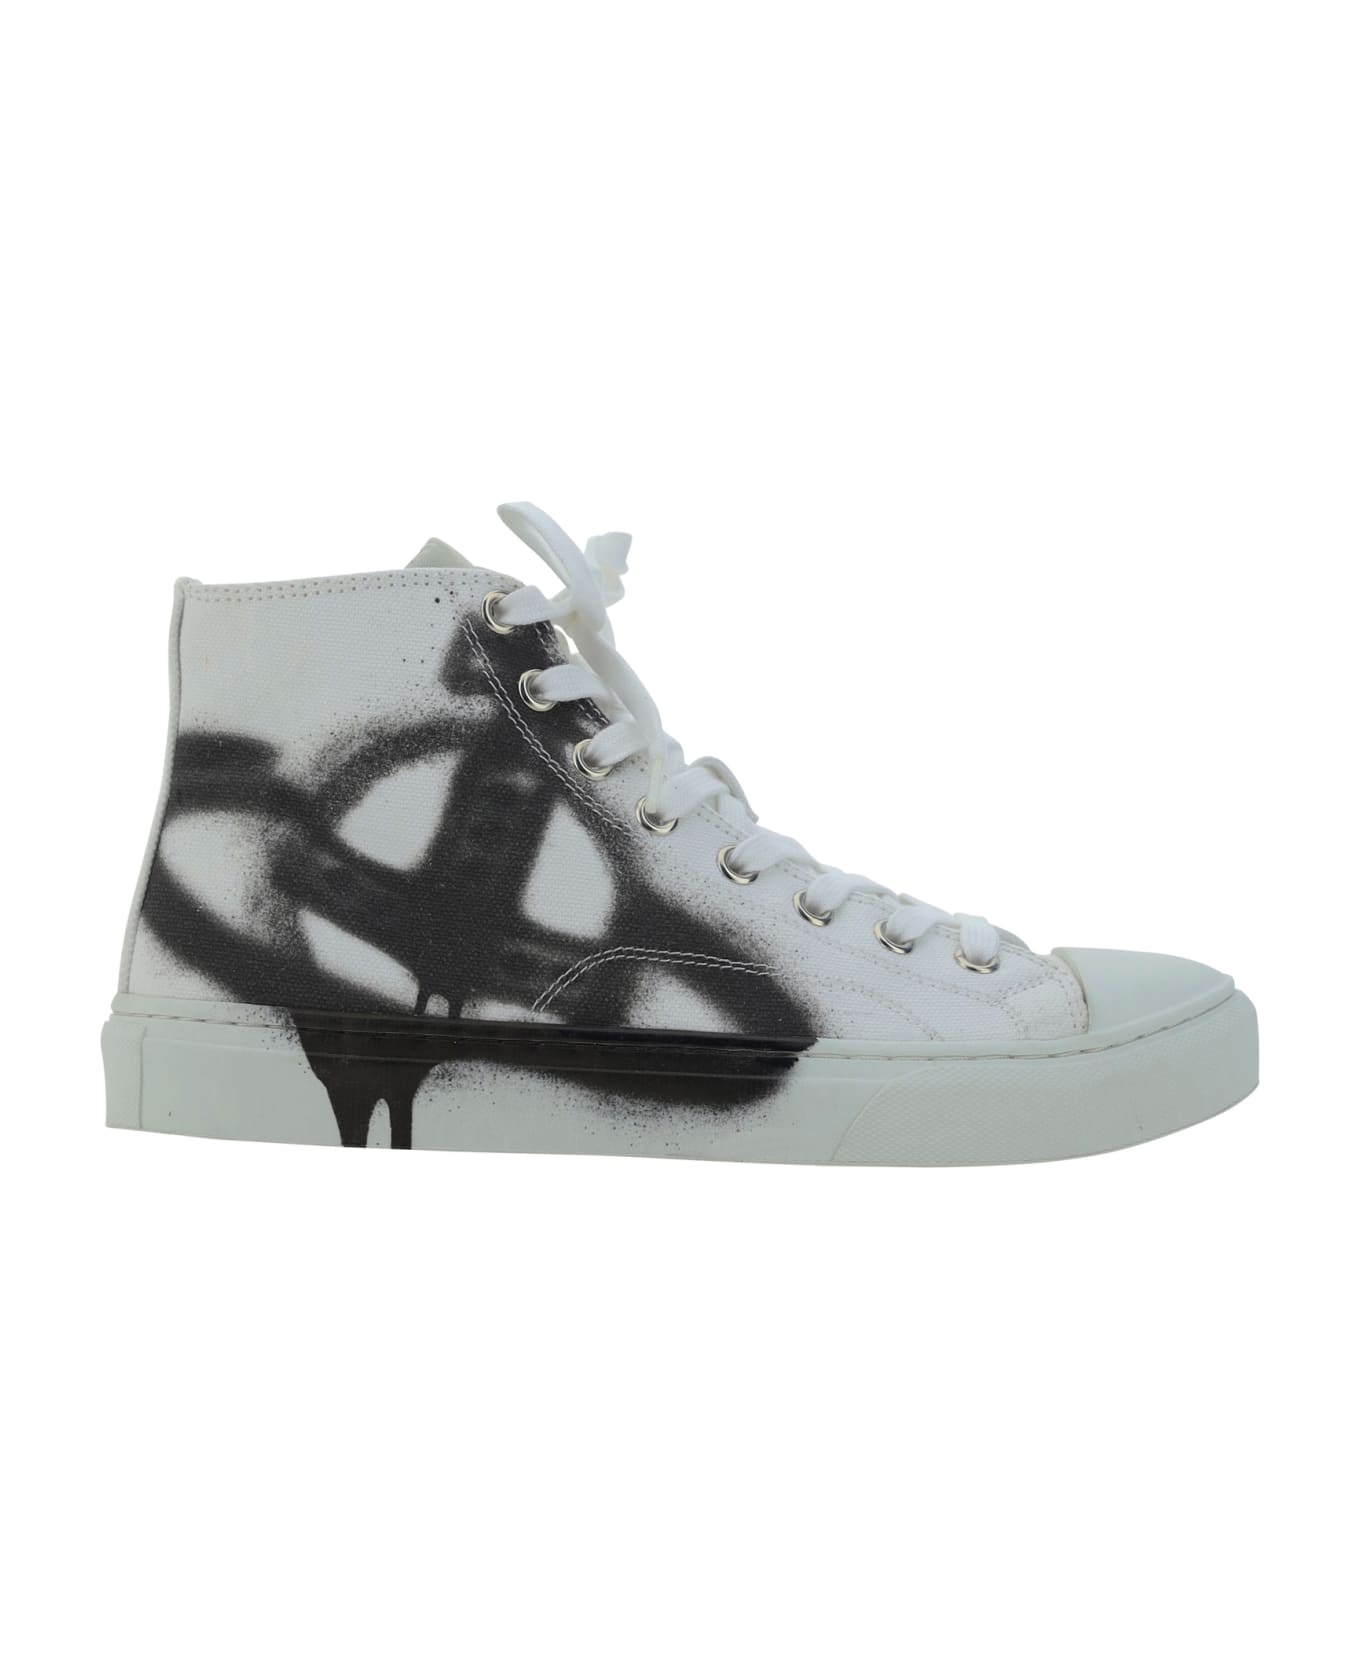 Vivienne Westwood Plimsoll Sneakers - White/black Orb スニーカー